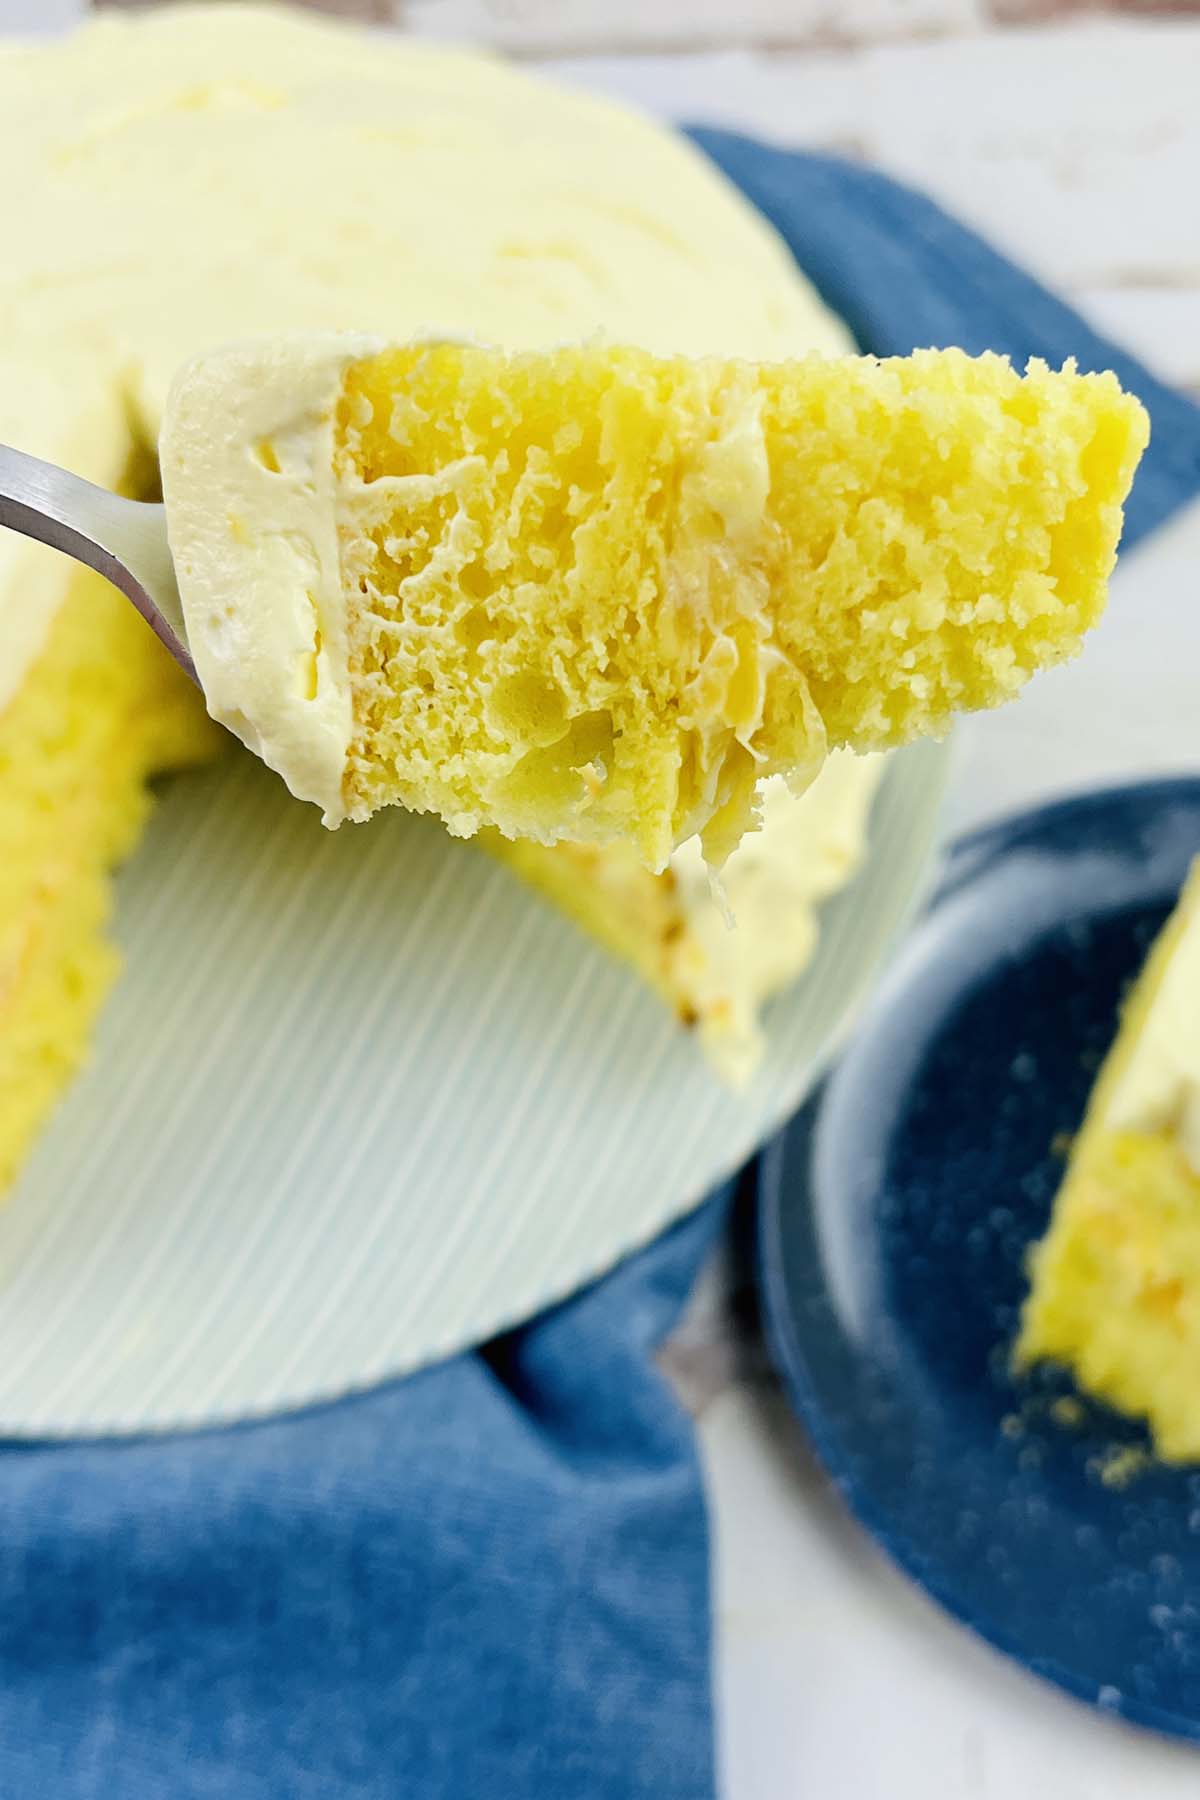 A piece of lemon cake on a fork.